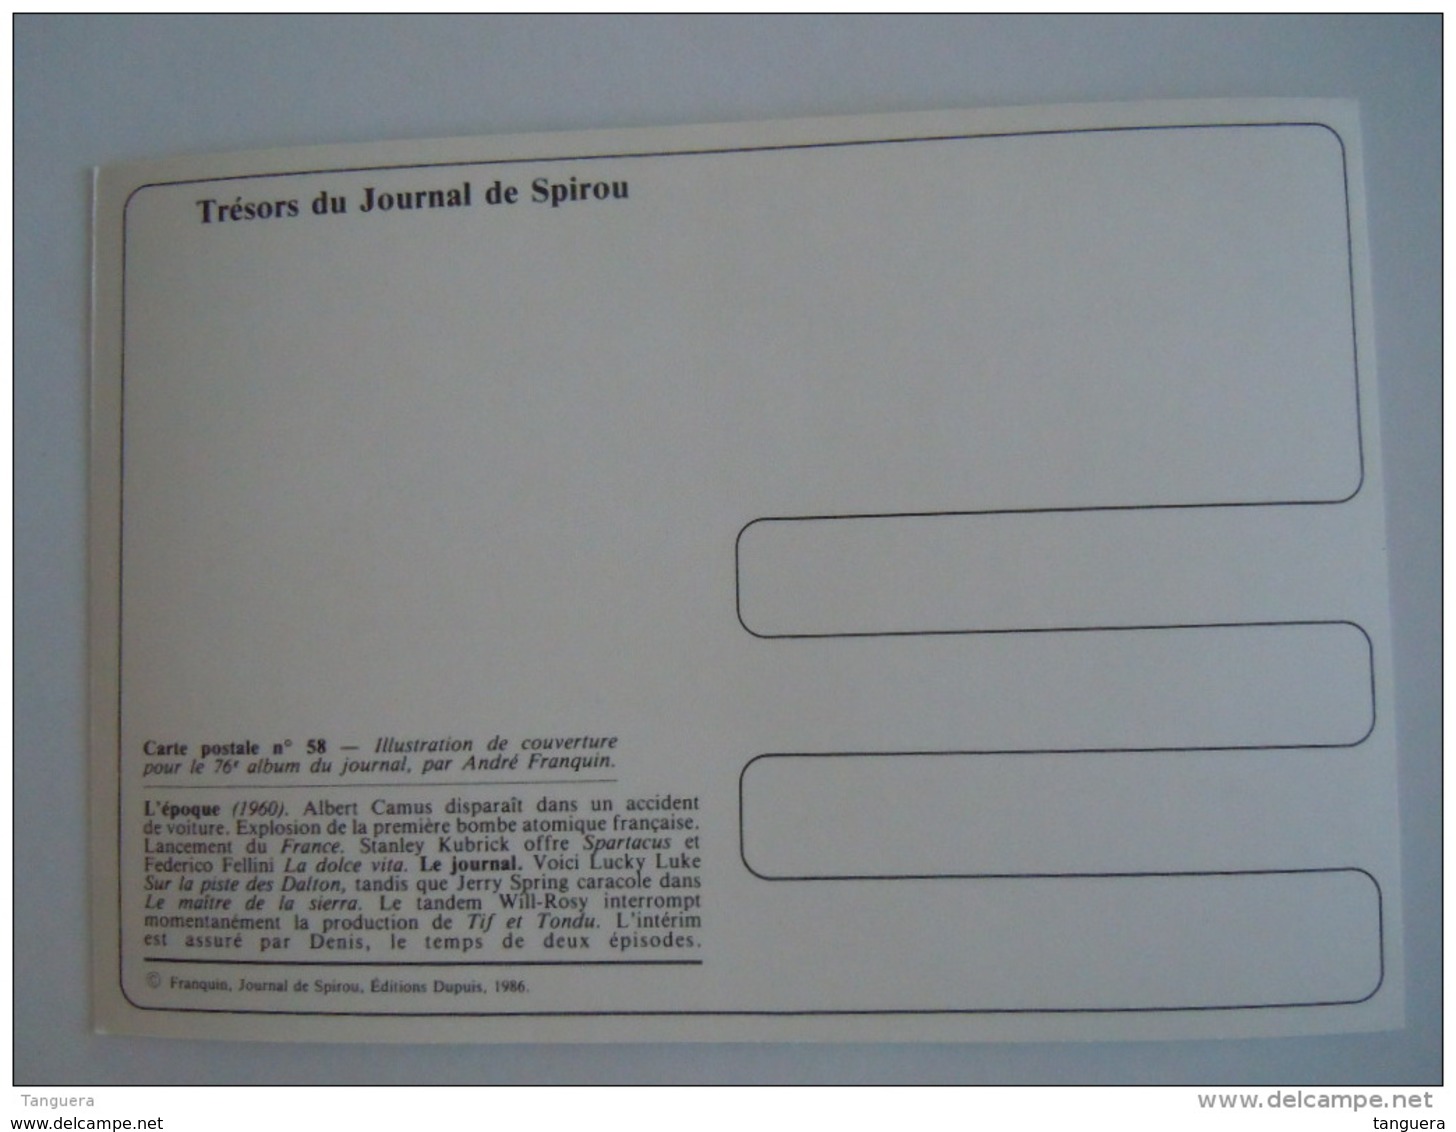 1986 Trésors Du Journal De Spirou Carte Postale 58 Illustration  Couverture Pour Le 76é Album Du Journal André Franquin - Comicfiguren